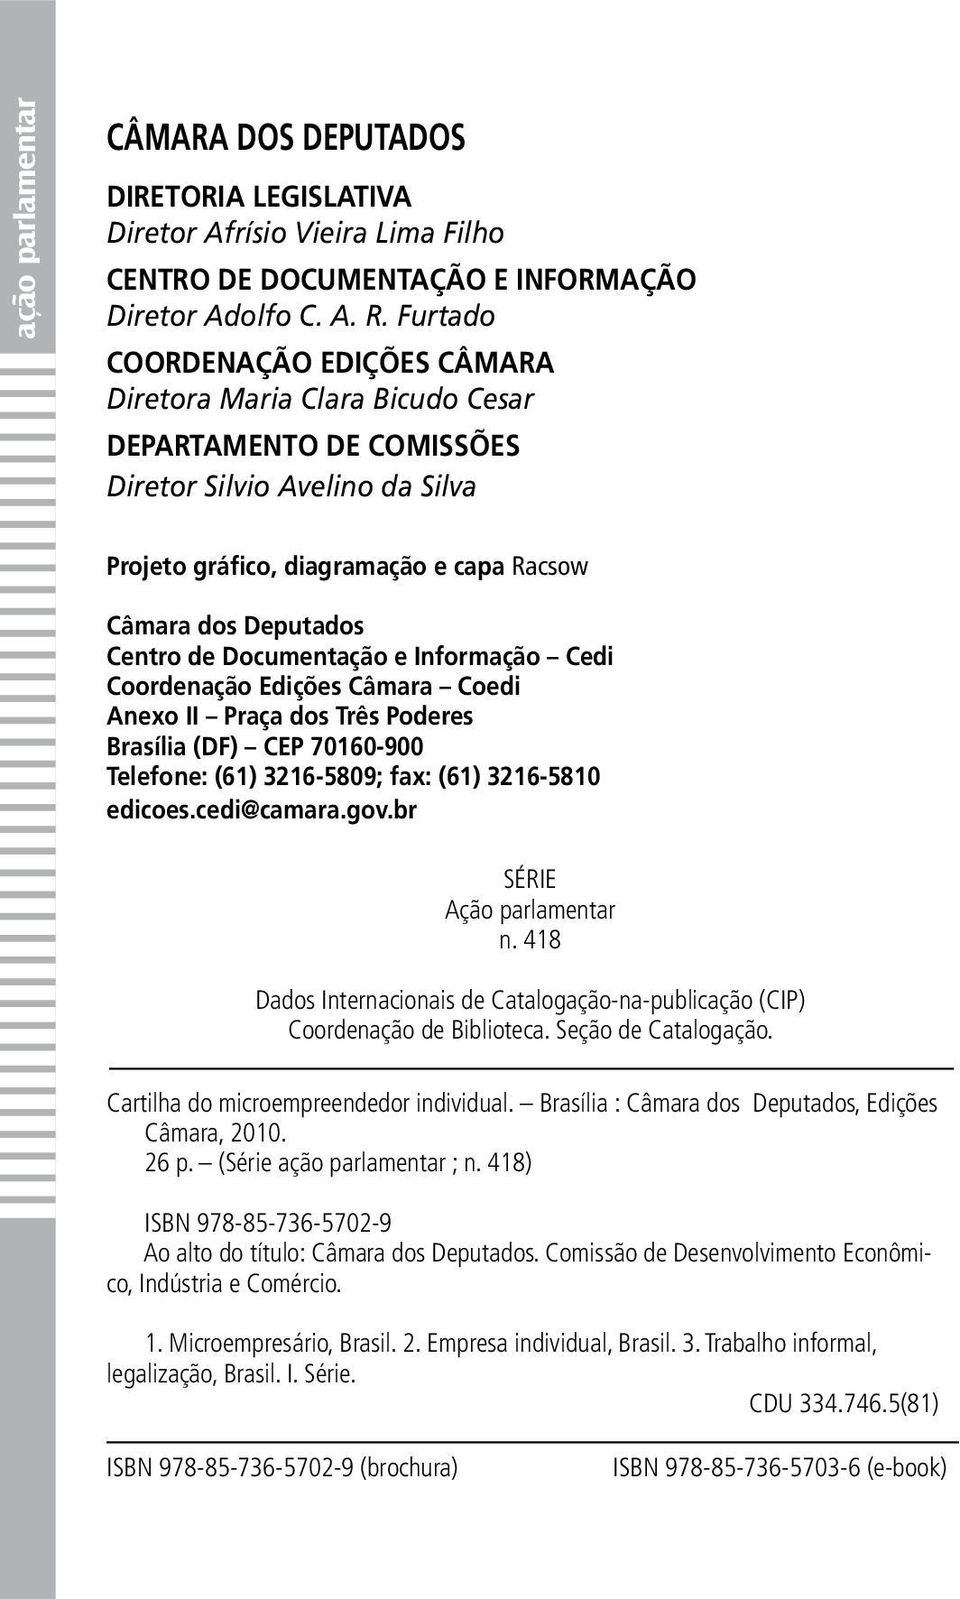 de Documentação e Informação Cedi Coordenação Edições Câmara Coedi Anexo II Praça dos Três Poderes Brasília (DF) CEP 70160-900 Telefone: (61) 3216-5809; fax: (61) 3216-5810 edicoes.cedi@camara.gov.